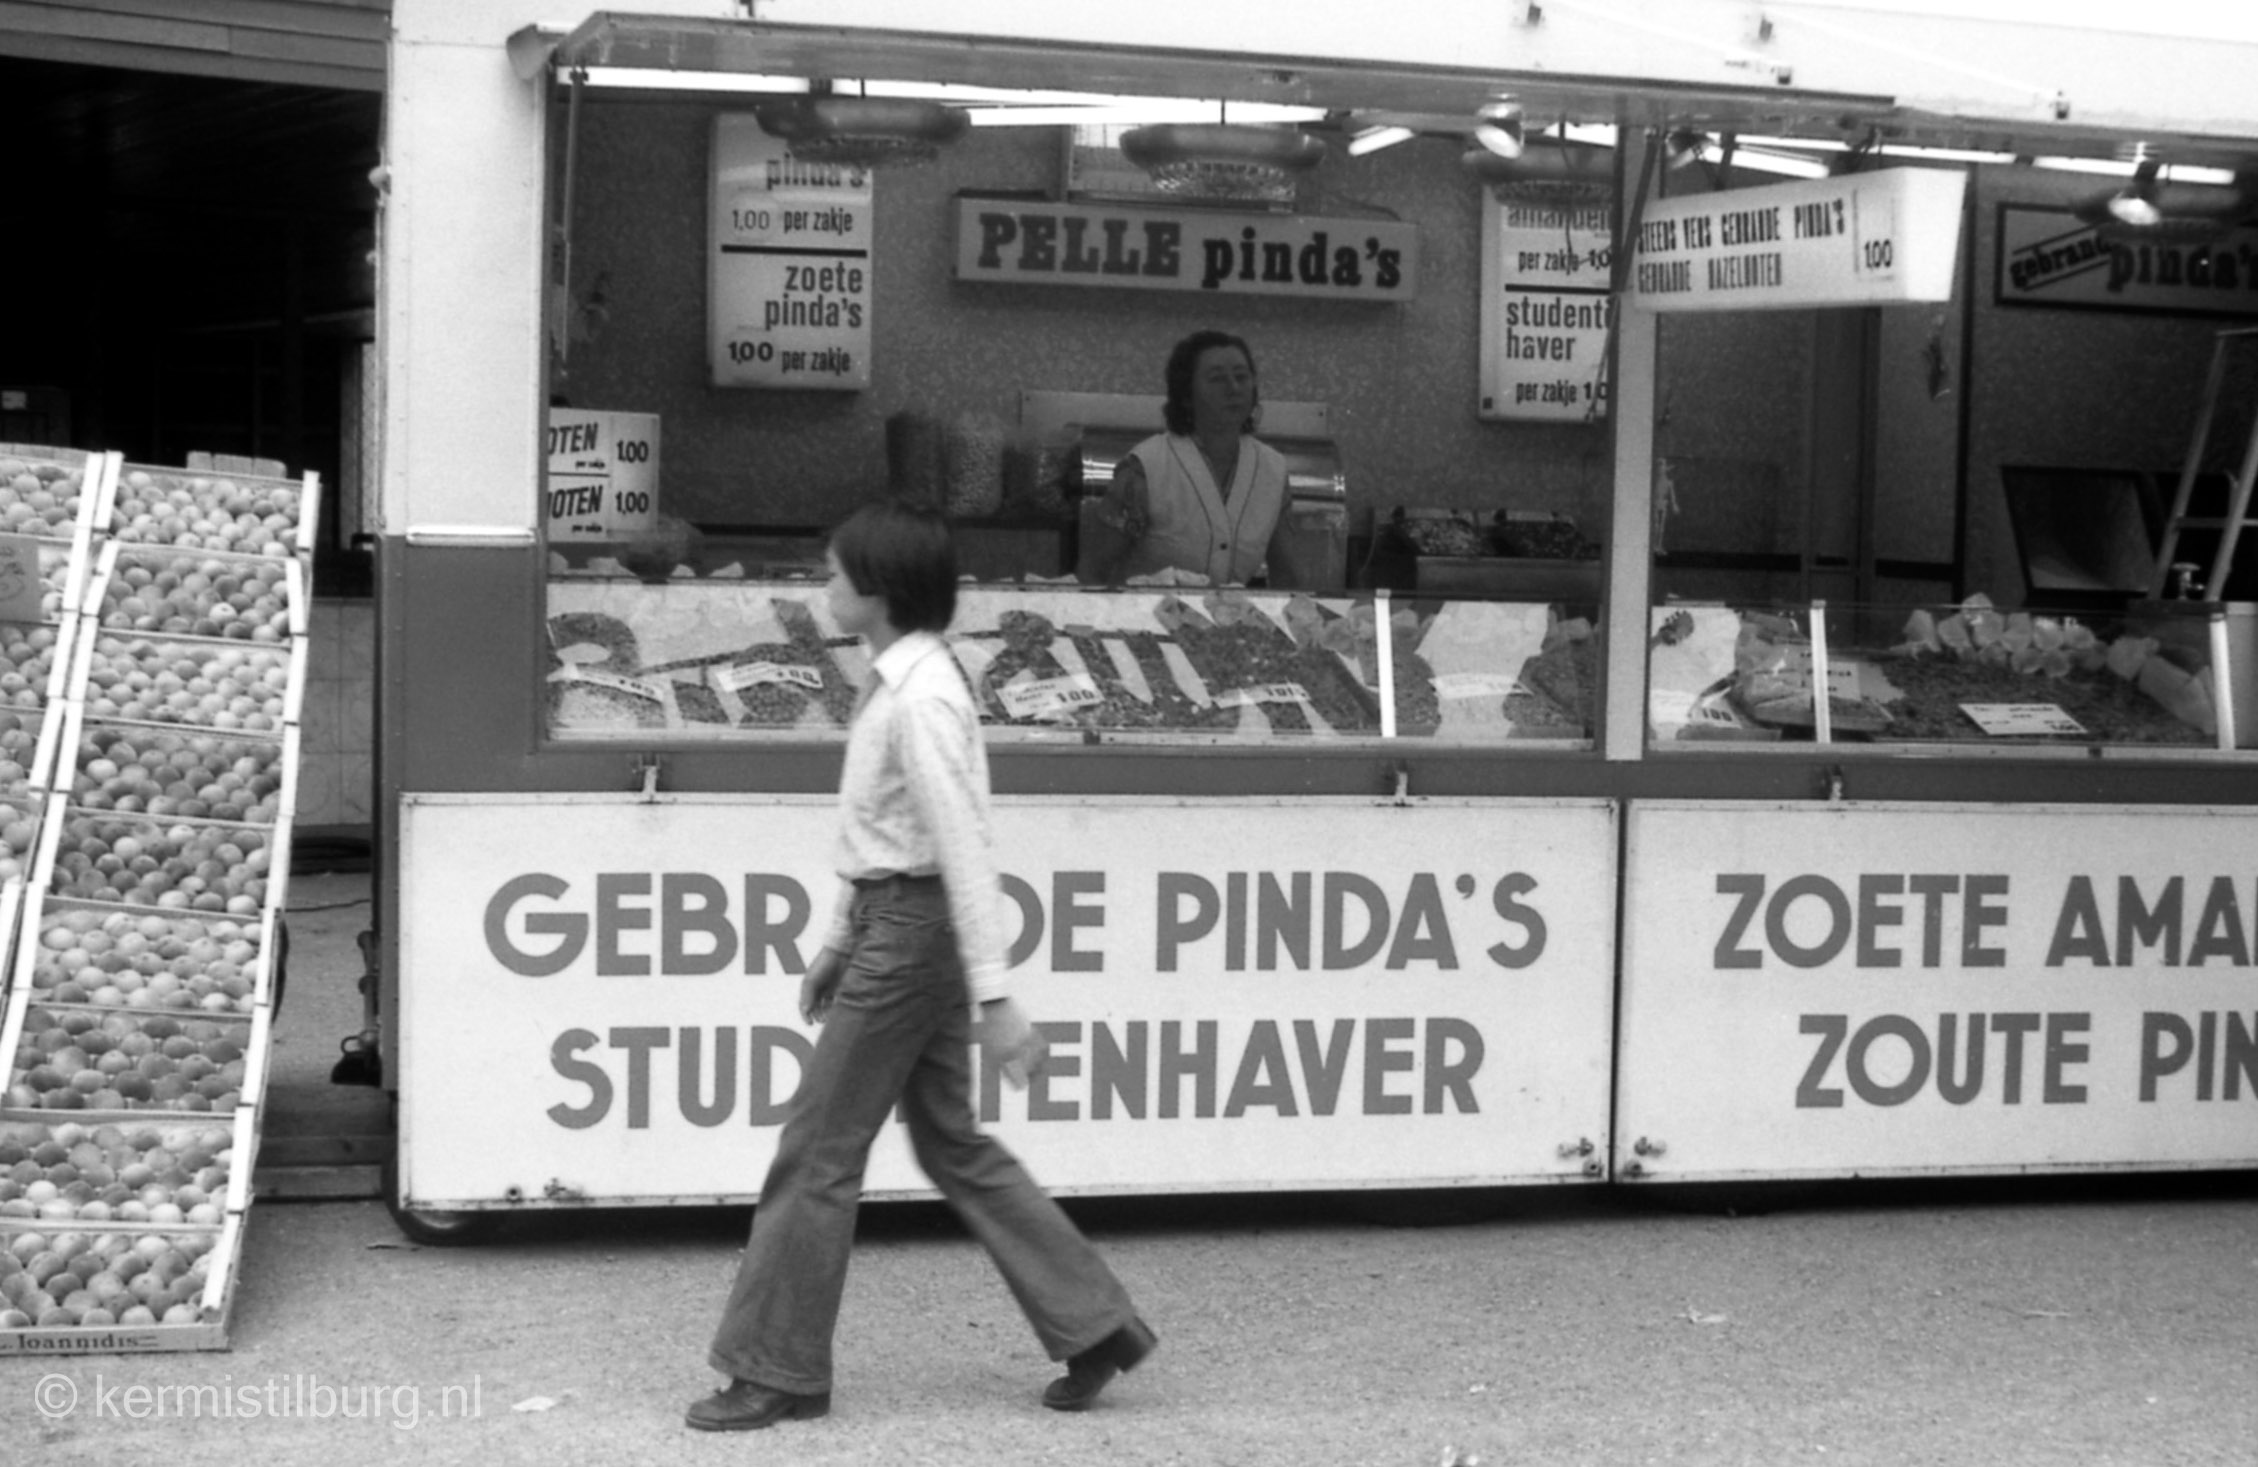 1977, Kermis, Tilburg, Tilburgse kermis, skc